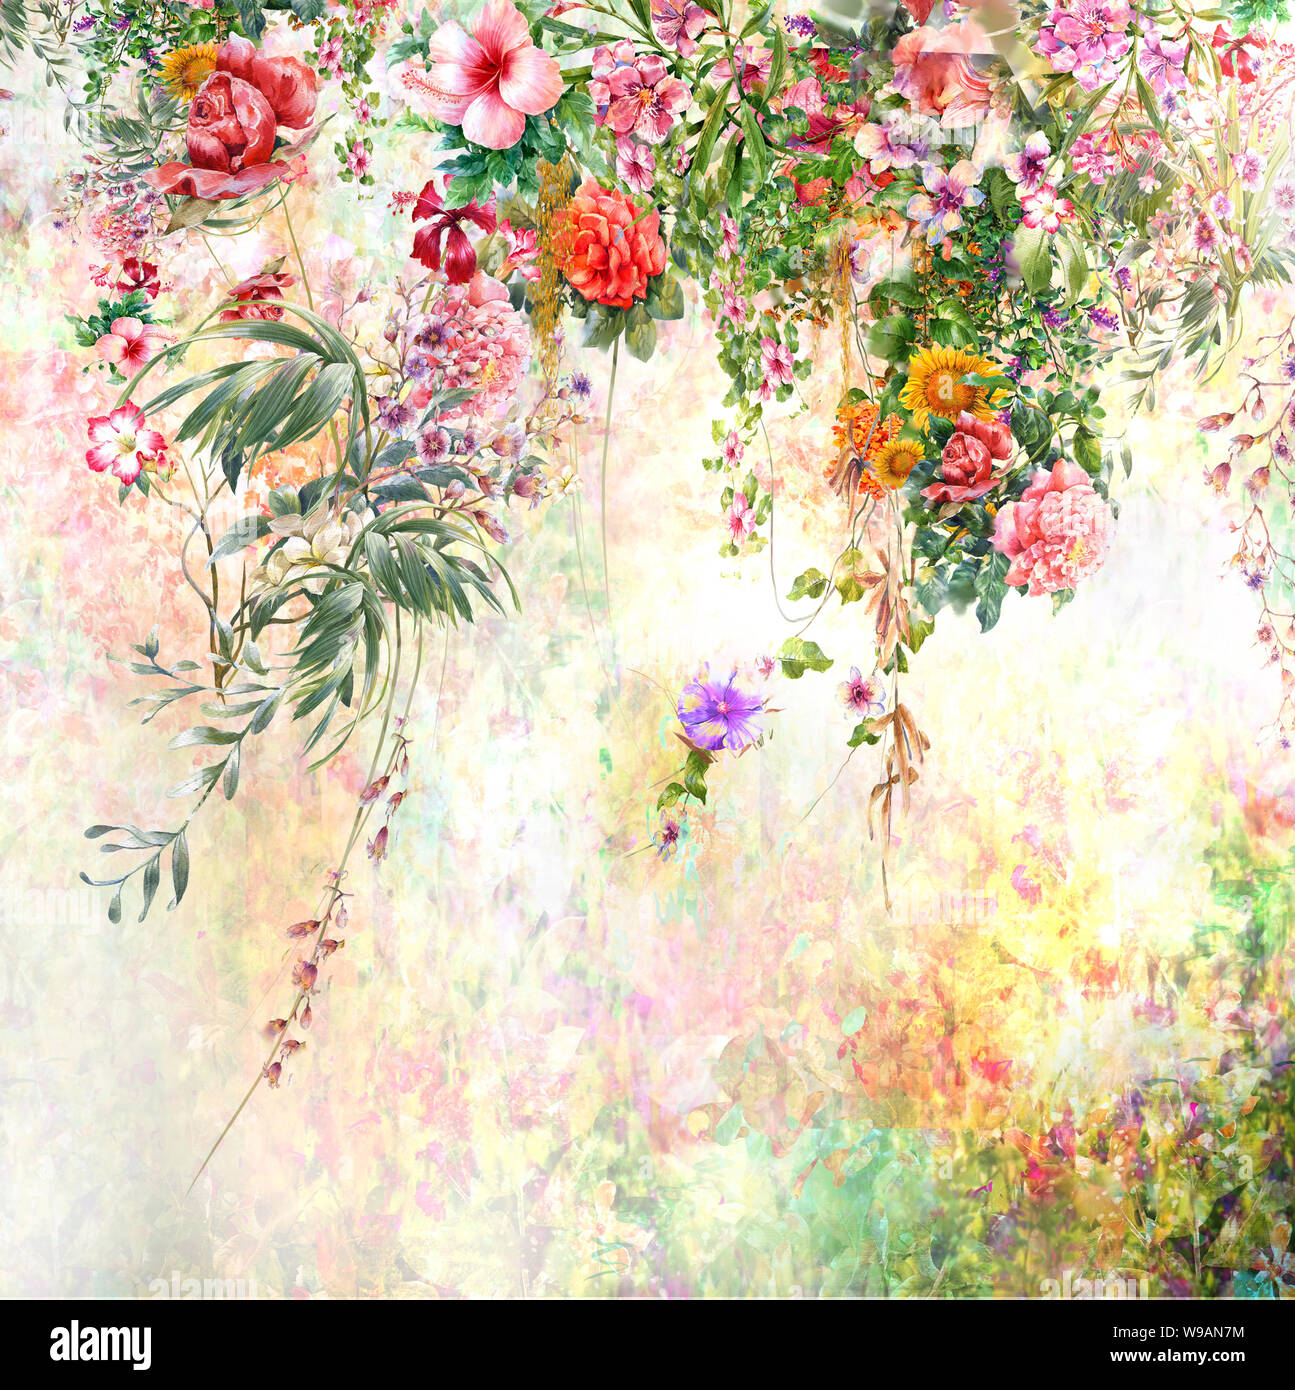 Abstract fiori colorati dipinti ad acquerello. Multicolore di primavera nella natura Foto Stock